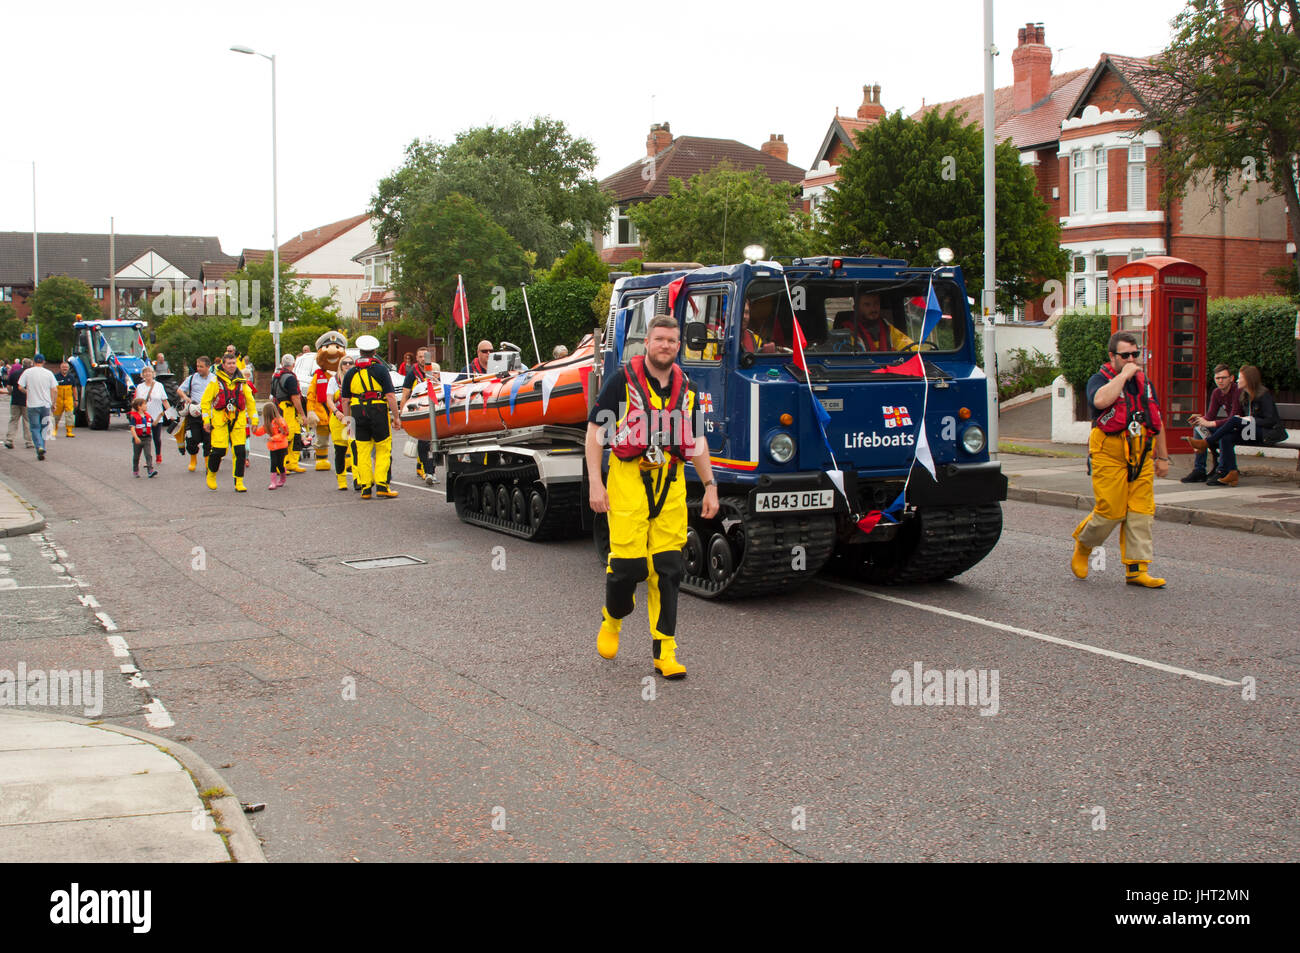 Samstag, 15. Juli, Hoylake, Wirral, Merseyside. Die jährliche Parade durch Meer Stadt von Hoylake während des Festivals von Wirral Premieren. Bildnachweis: Niall Woods/Alamy Live-Nachrichten Stockfoto